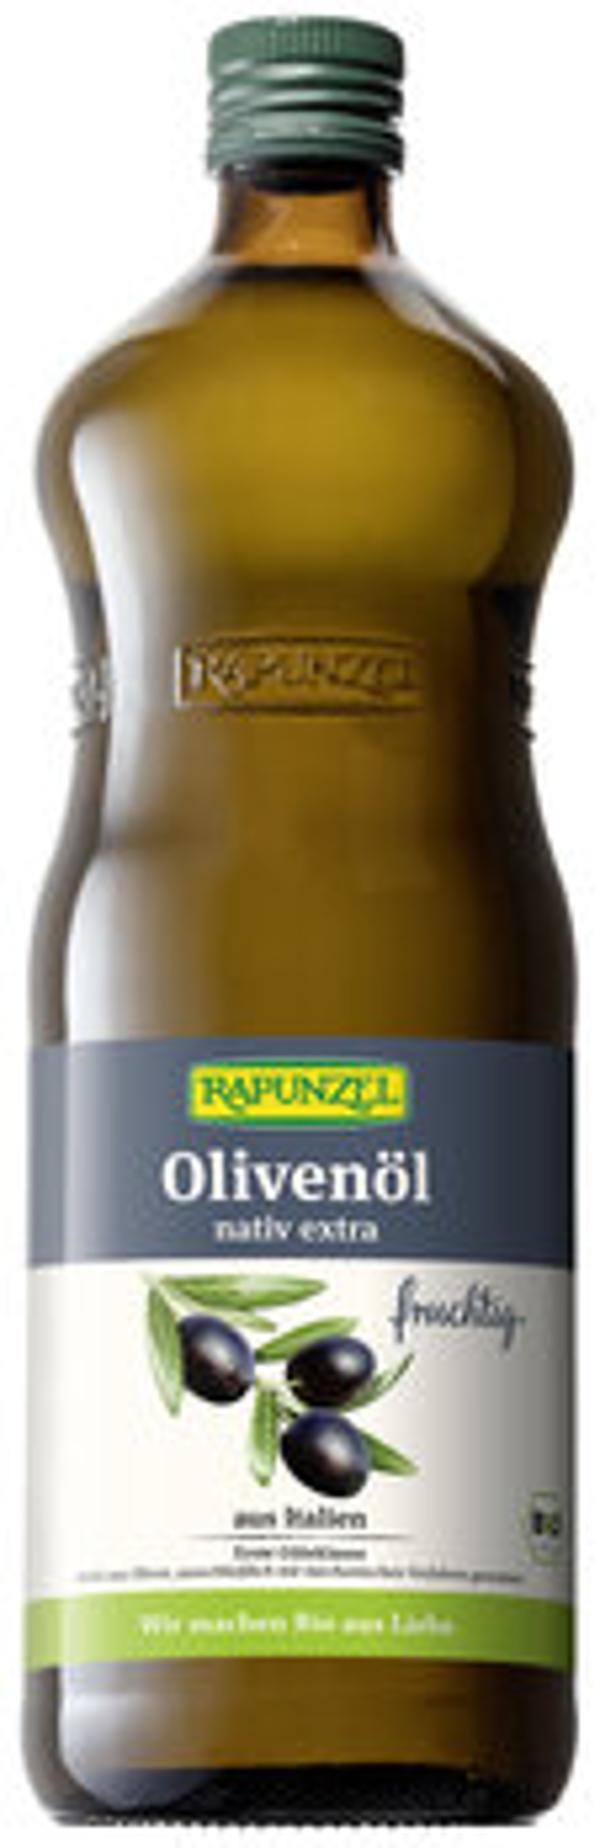 Produktbild von Rapunzel Olivenöl fruchtig, nativ extra 1l